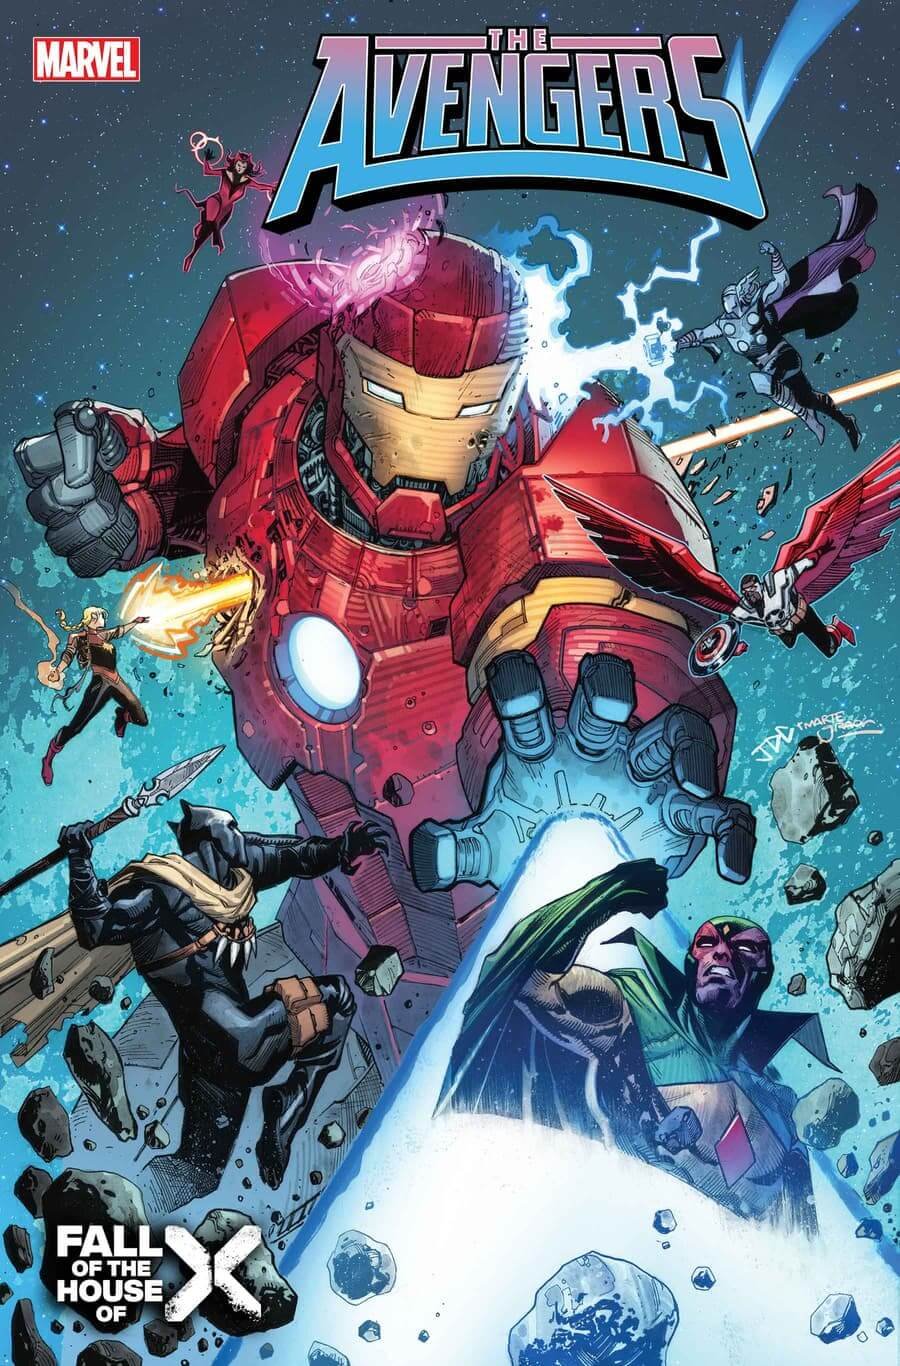 Couverture d'Avengers 13 par Joshua Cassara, crossover avec les X-Men.